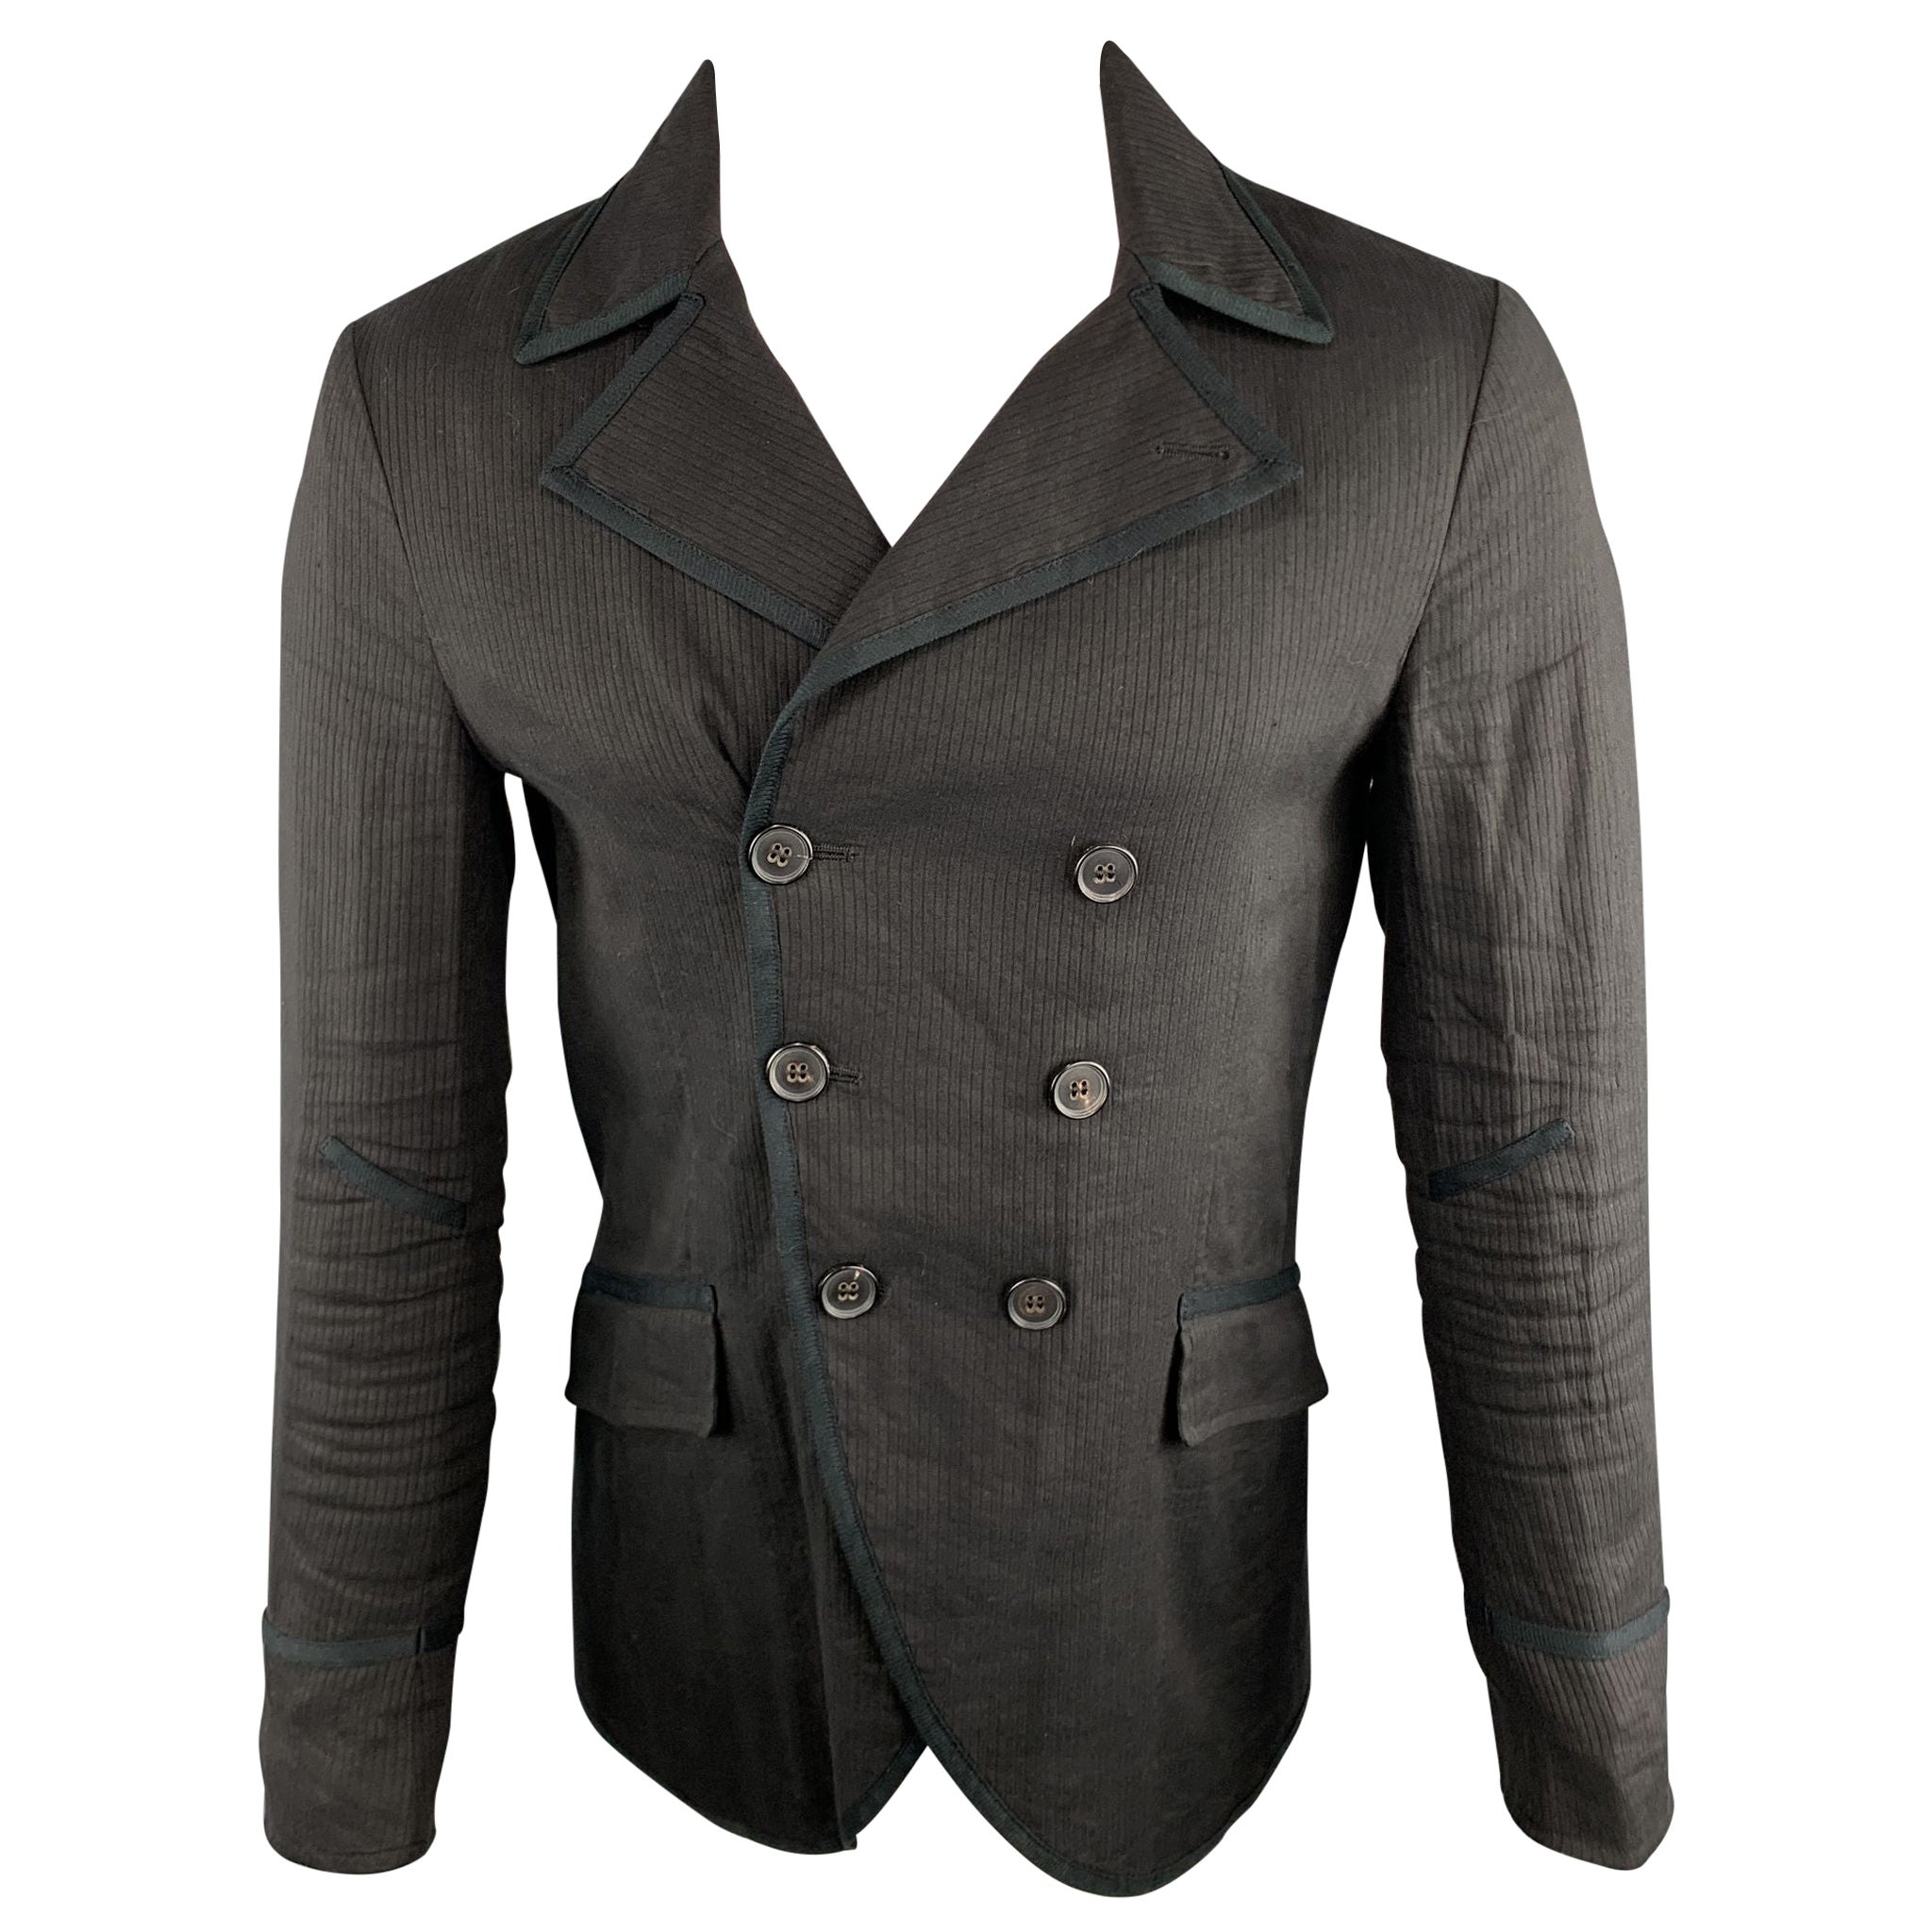 JOHN VARVATOS Size 34 Solid Black Viscose Blend Double Breasted Jacket